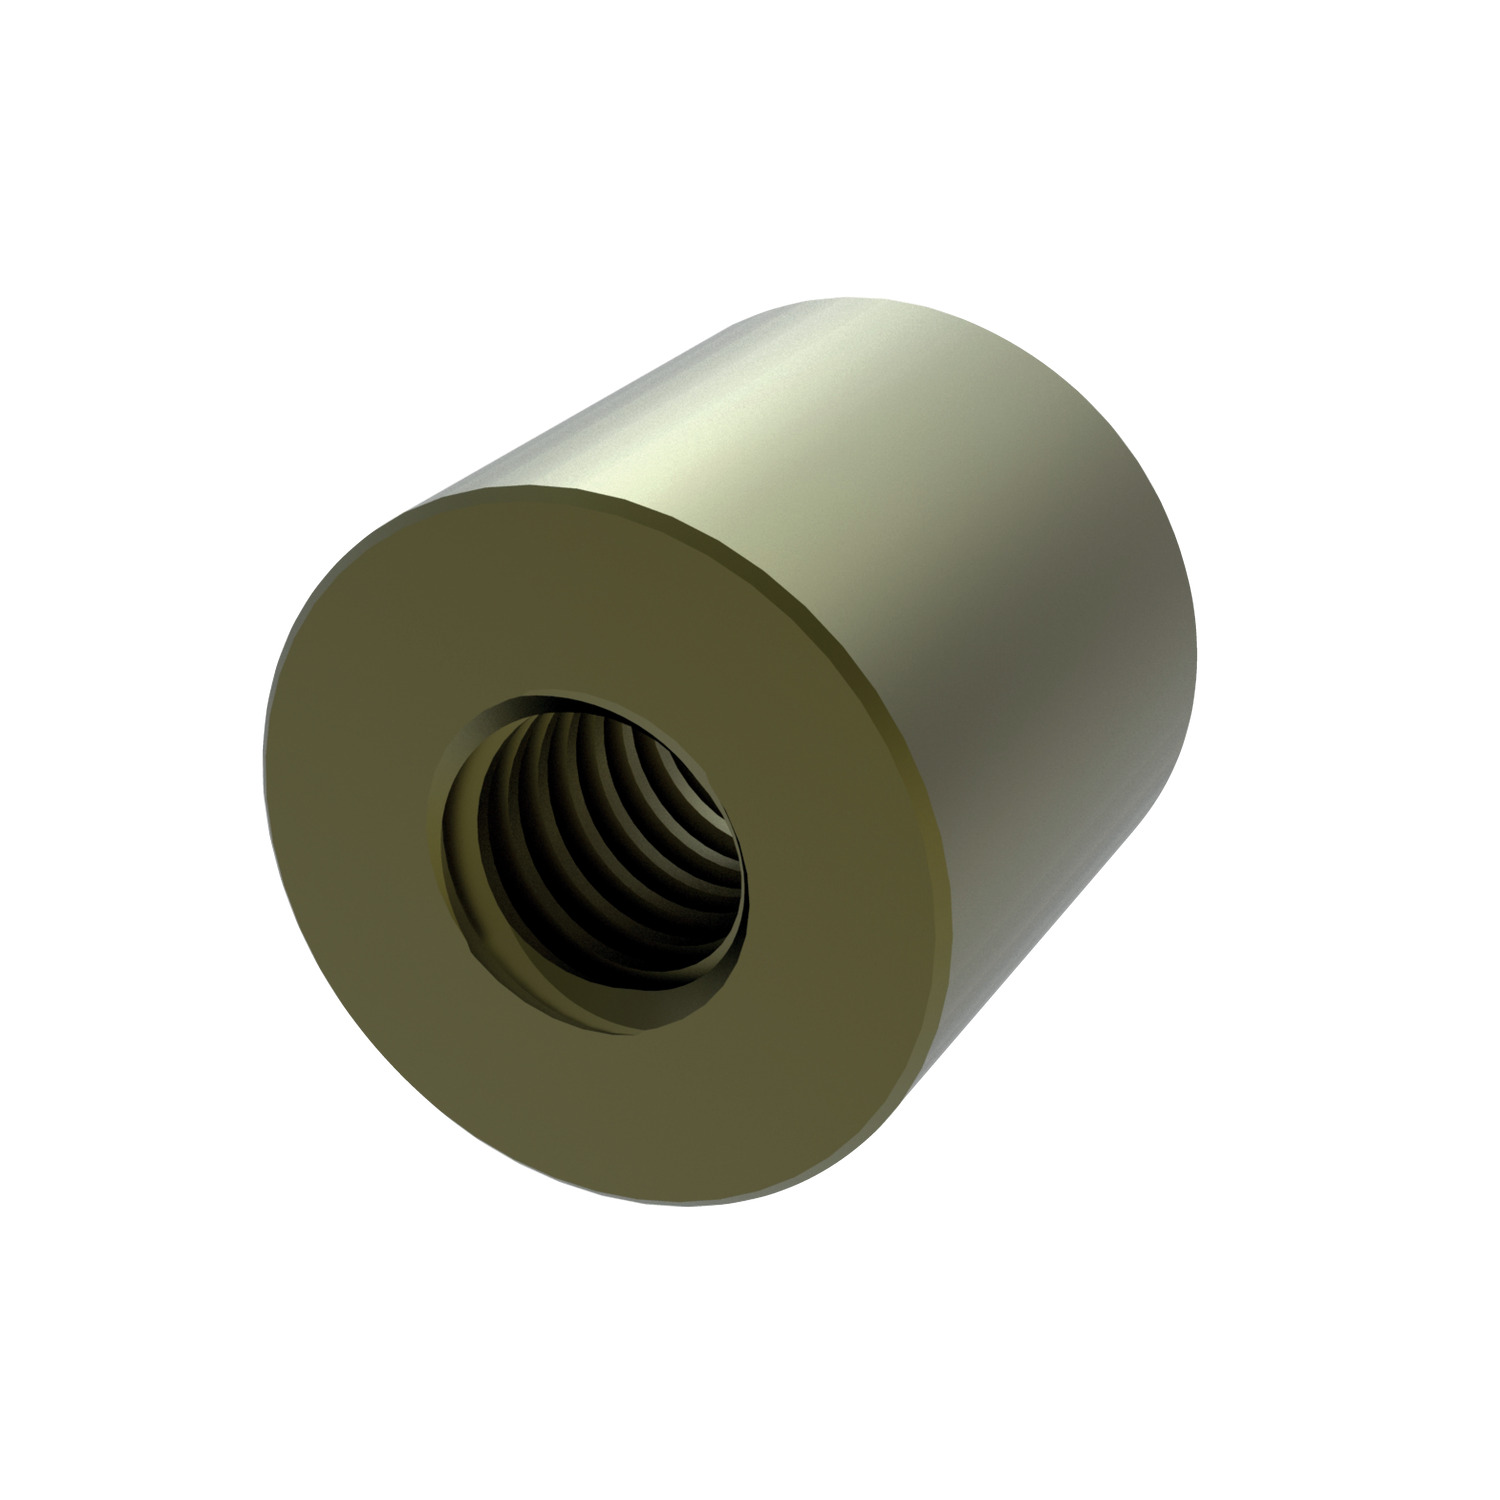 L1330.R10-04 Cylindrical bronze nut RH DIN 103 R10x04 EC:20149604 WG:05063055481304